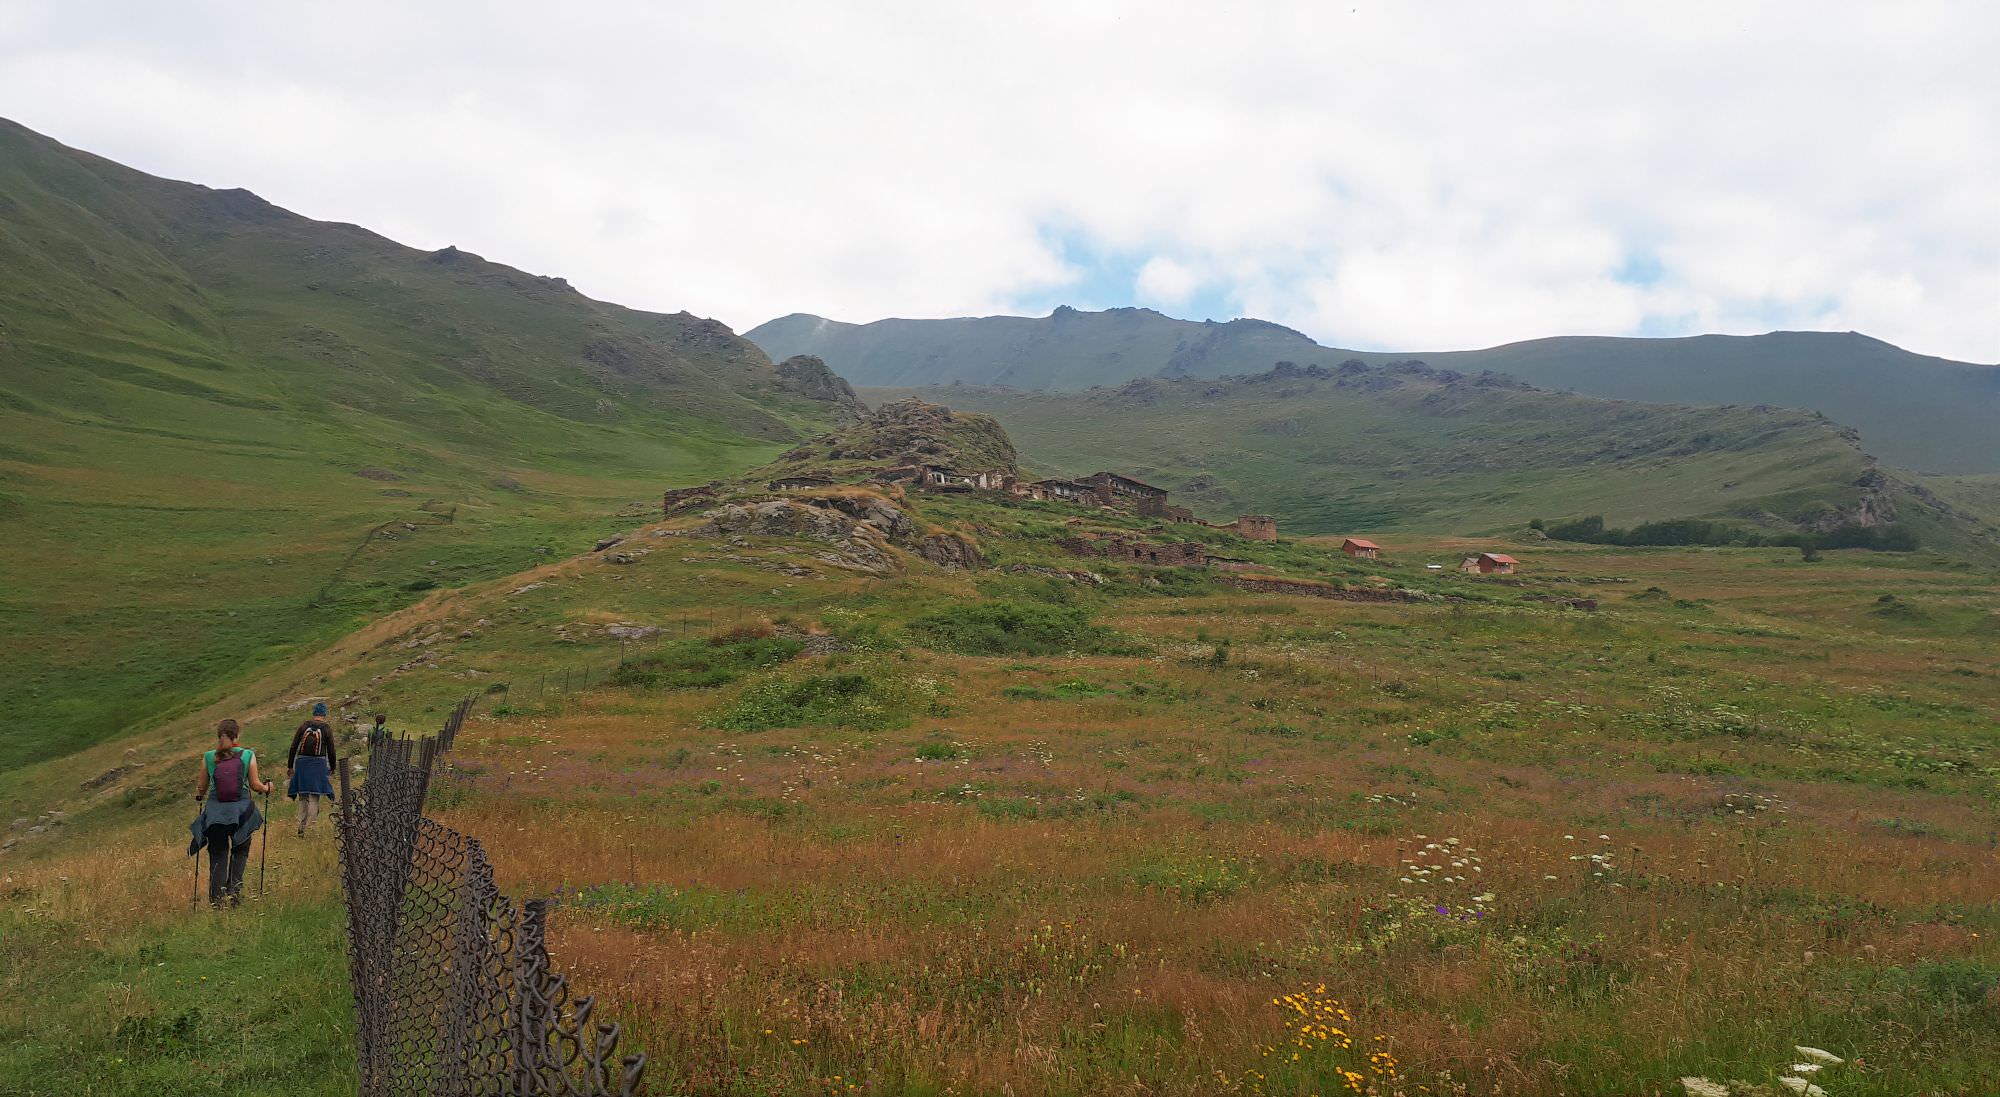 Ruins of Toti village ahead